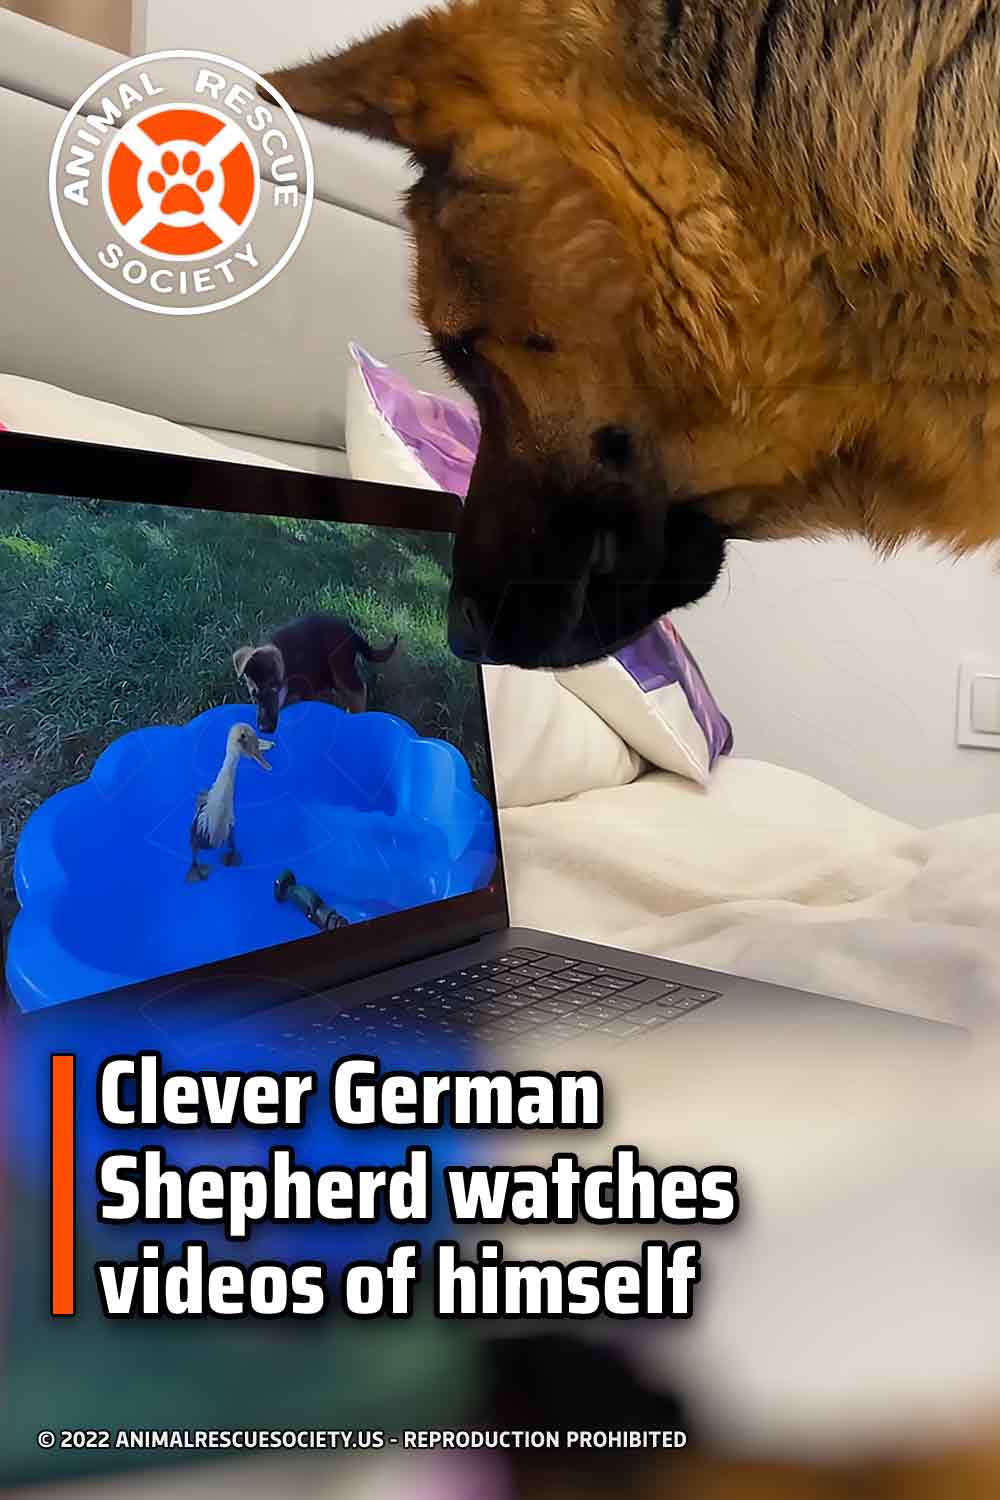 Clever German Shepherd watches videos of himself